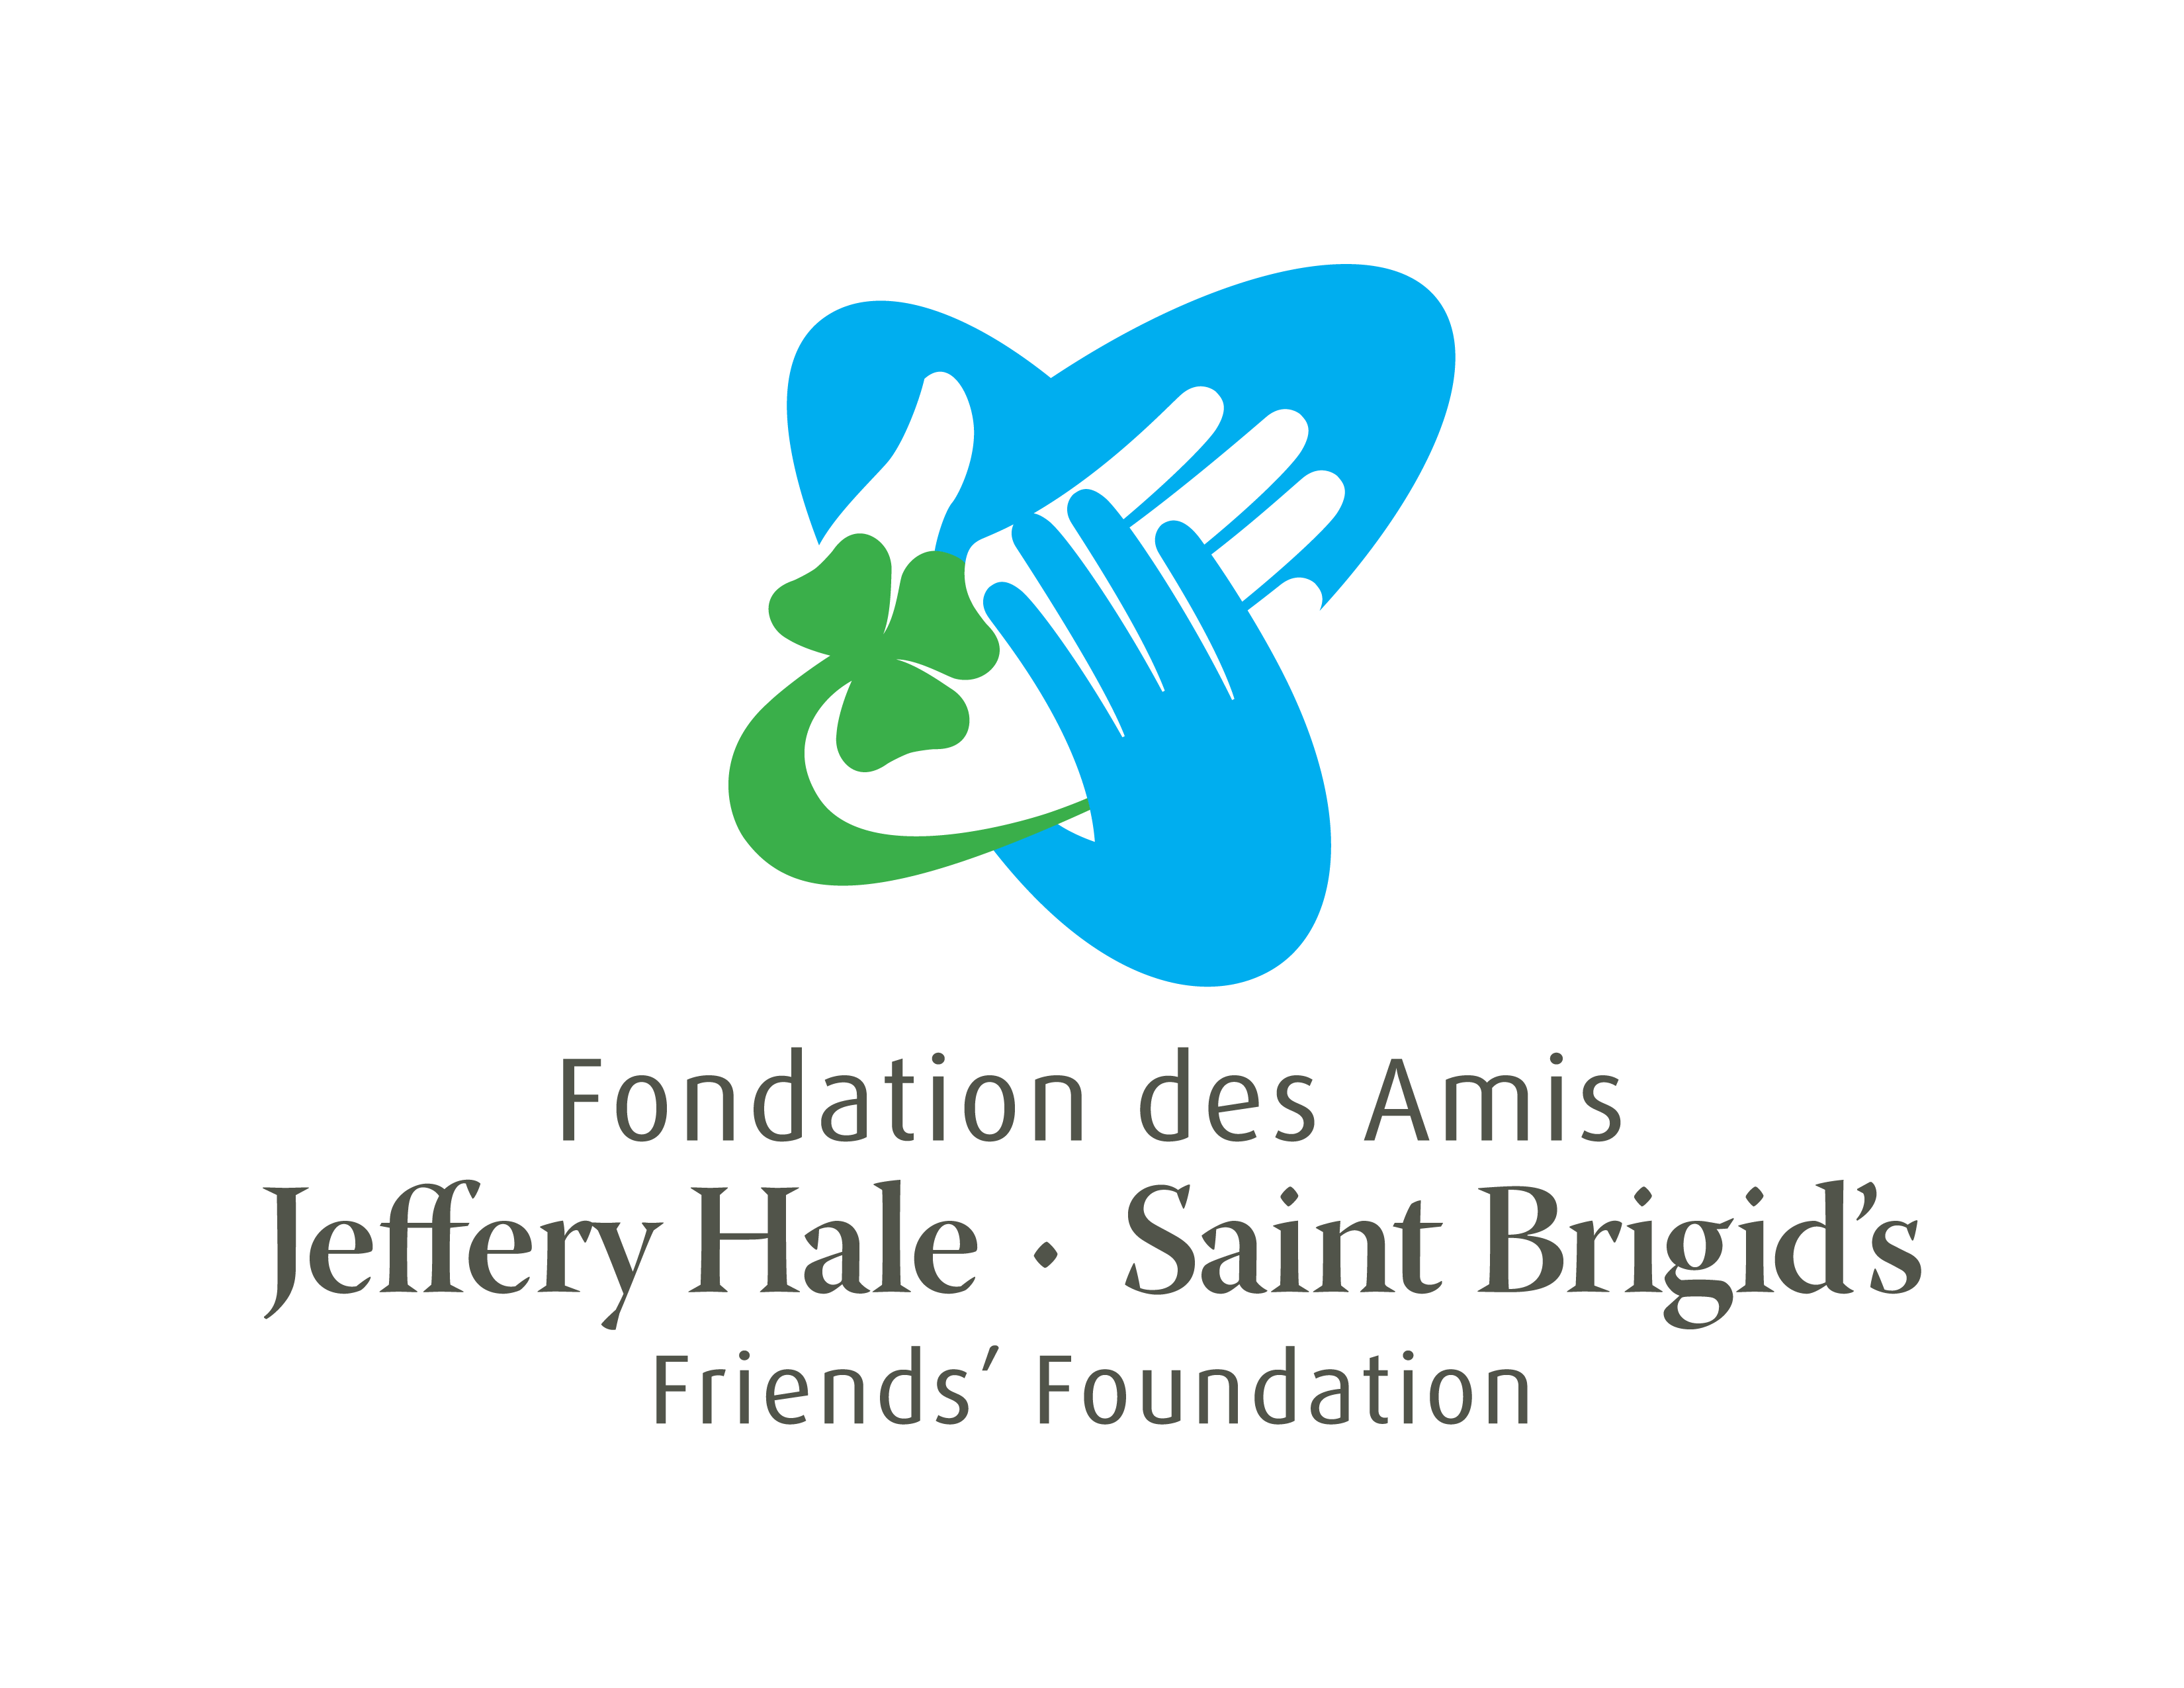 Fondation des Amis du Jeffery Hale – Saint Brigid's logo